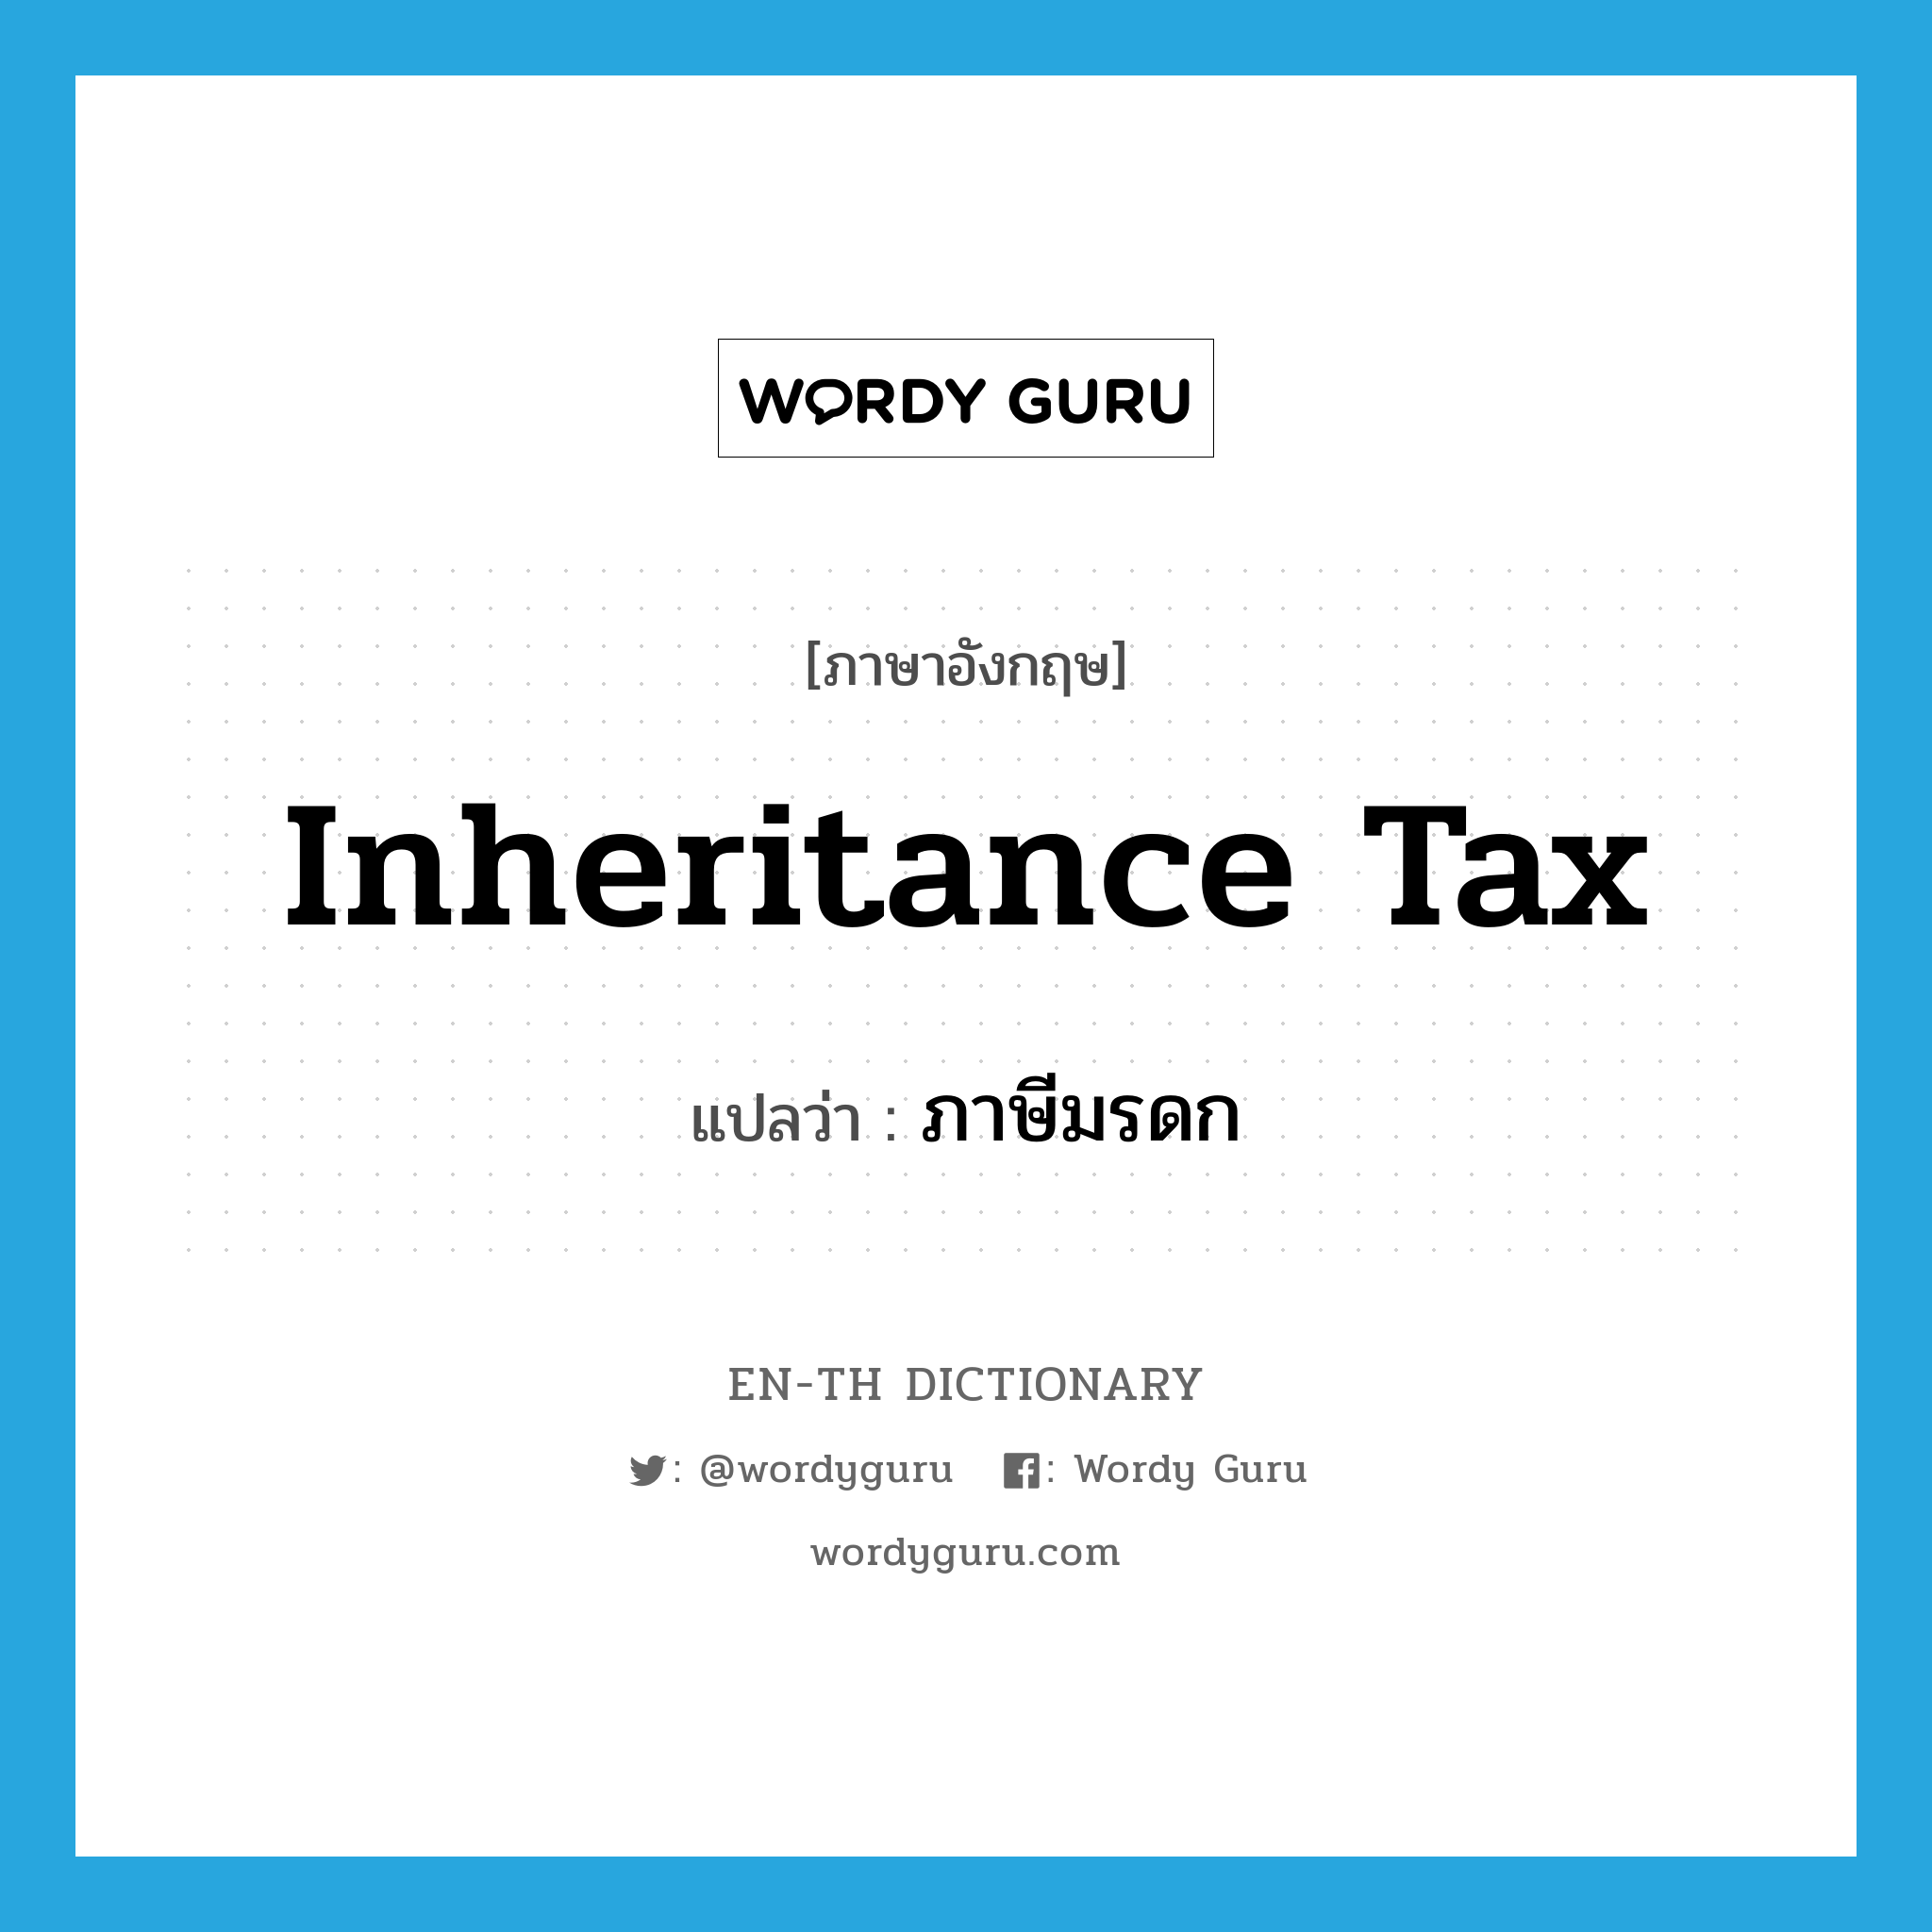 ภาษีมรดก ภาษาอังกฤษ?, คำศัพท์ภาษาอังกฤษ ภาษีมรดก แปลว่า inheritance tax ประเภท N หมวด N